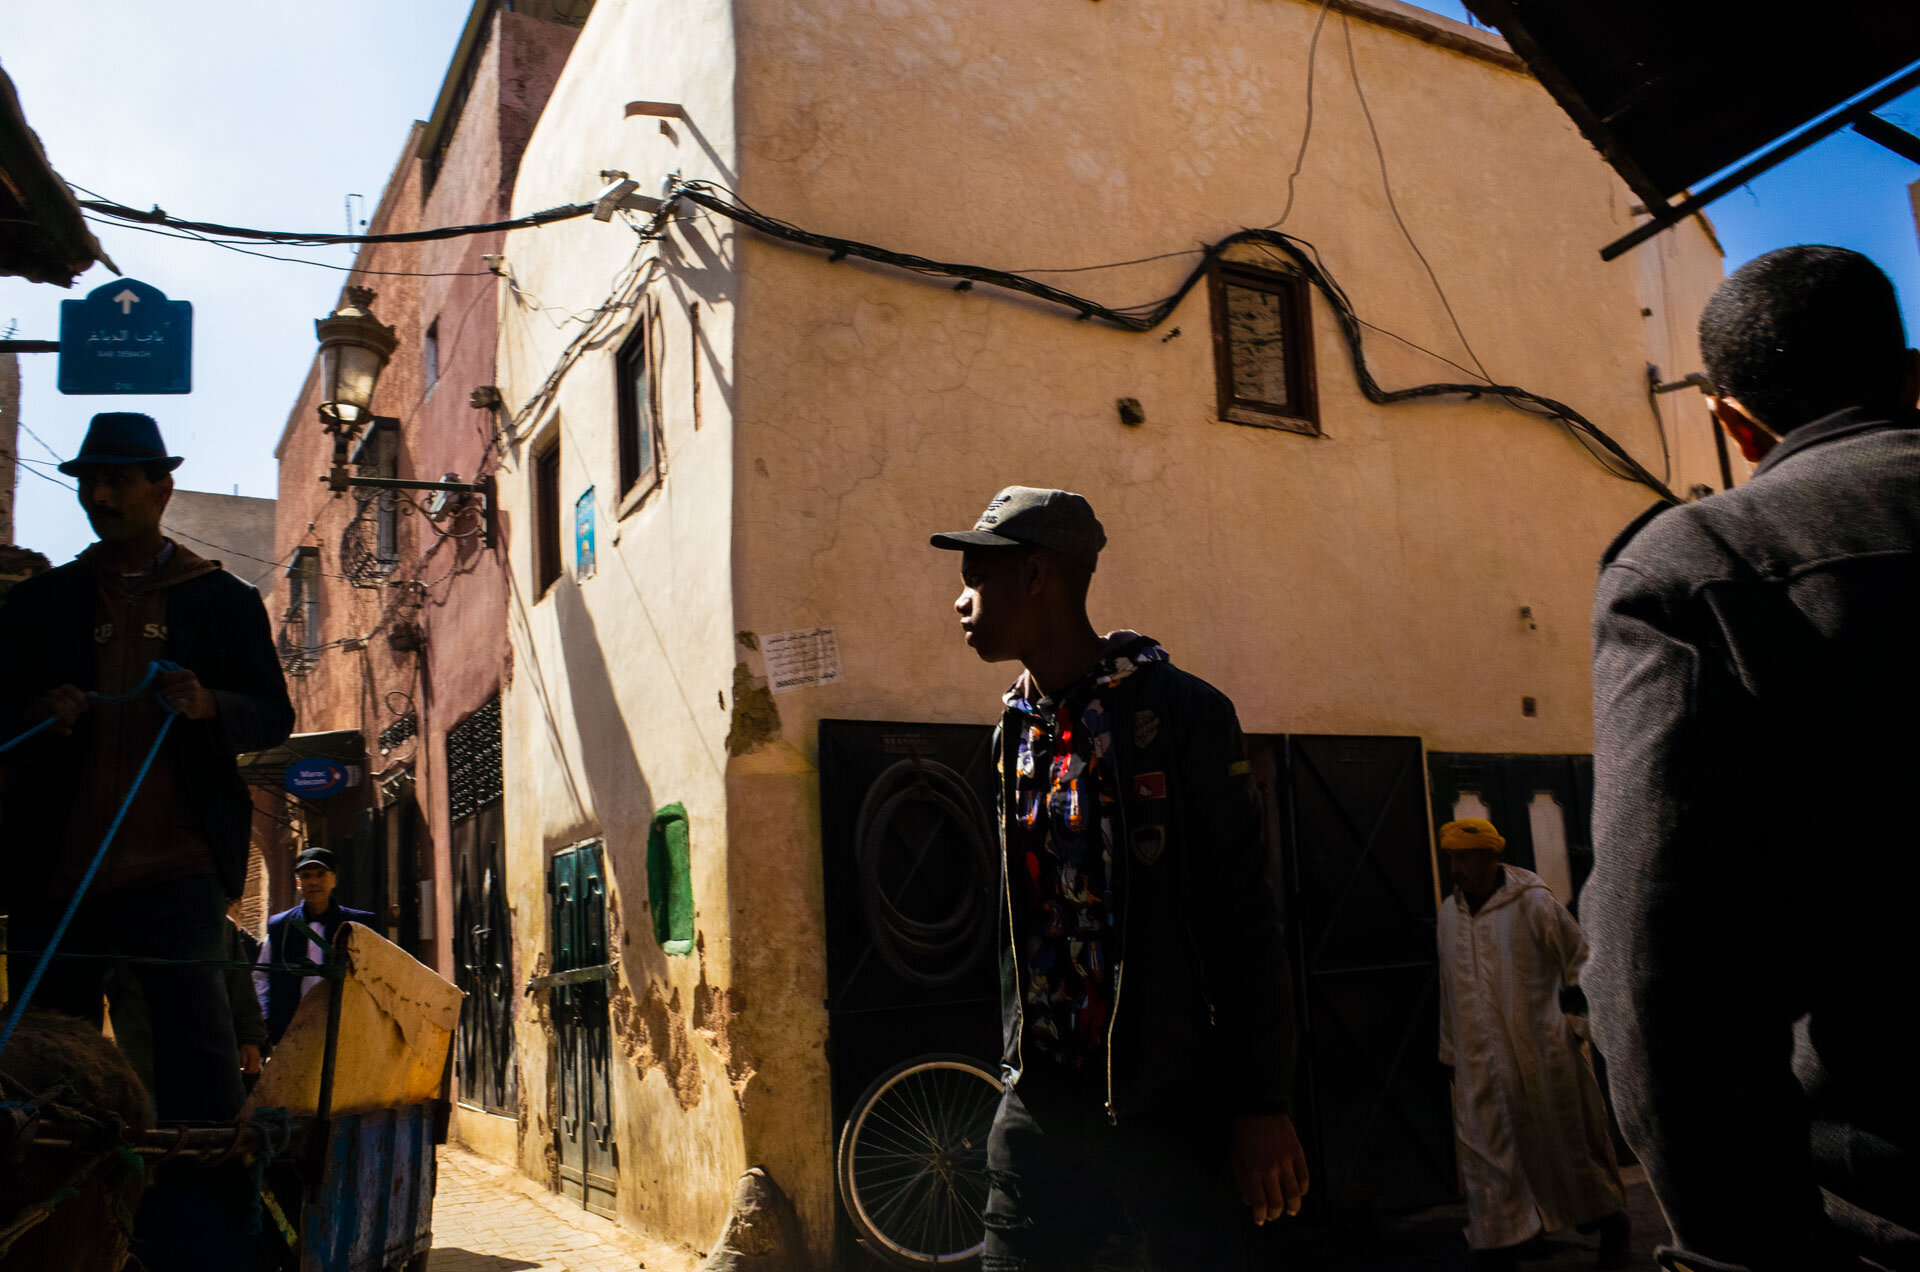 Marocco, marocco on the road, viaggio in marocco, marrakech, medina, bazar, viaggio di coppia, viaggo in marocco itinerario, marrakech marocco, marrakech riad, marrakech hotel, marrakech cosa vedere, marrakech cosa fare-18.jpg